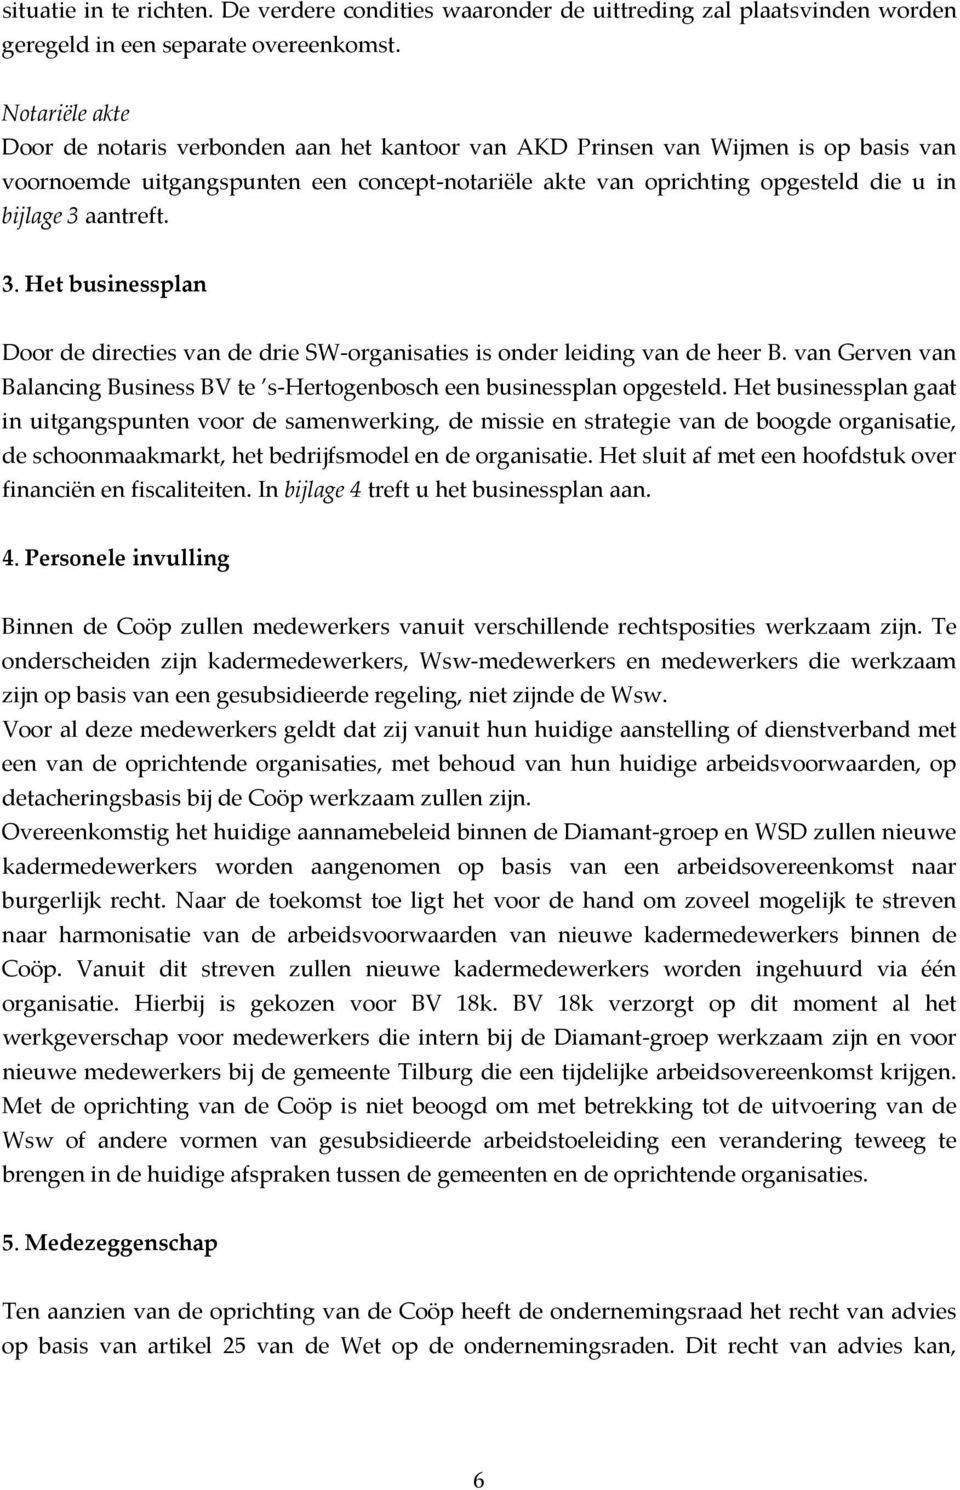 aantreft. 3. Het businessplan Door de directies van de drie SW organisaties is onder leiding van de heer B. van Gerven van Balancing Business BV te s Hertogenbosch een businessplan opgesteld.